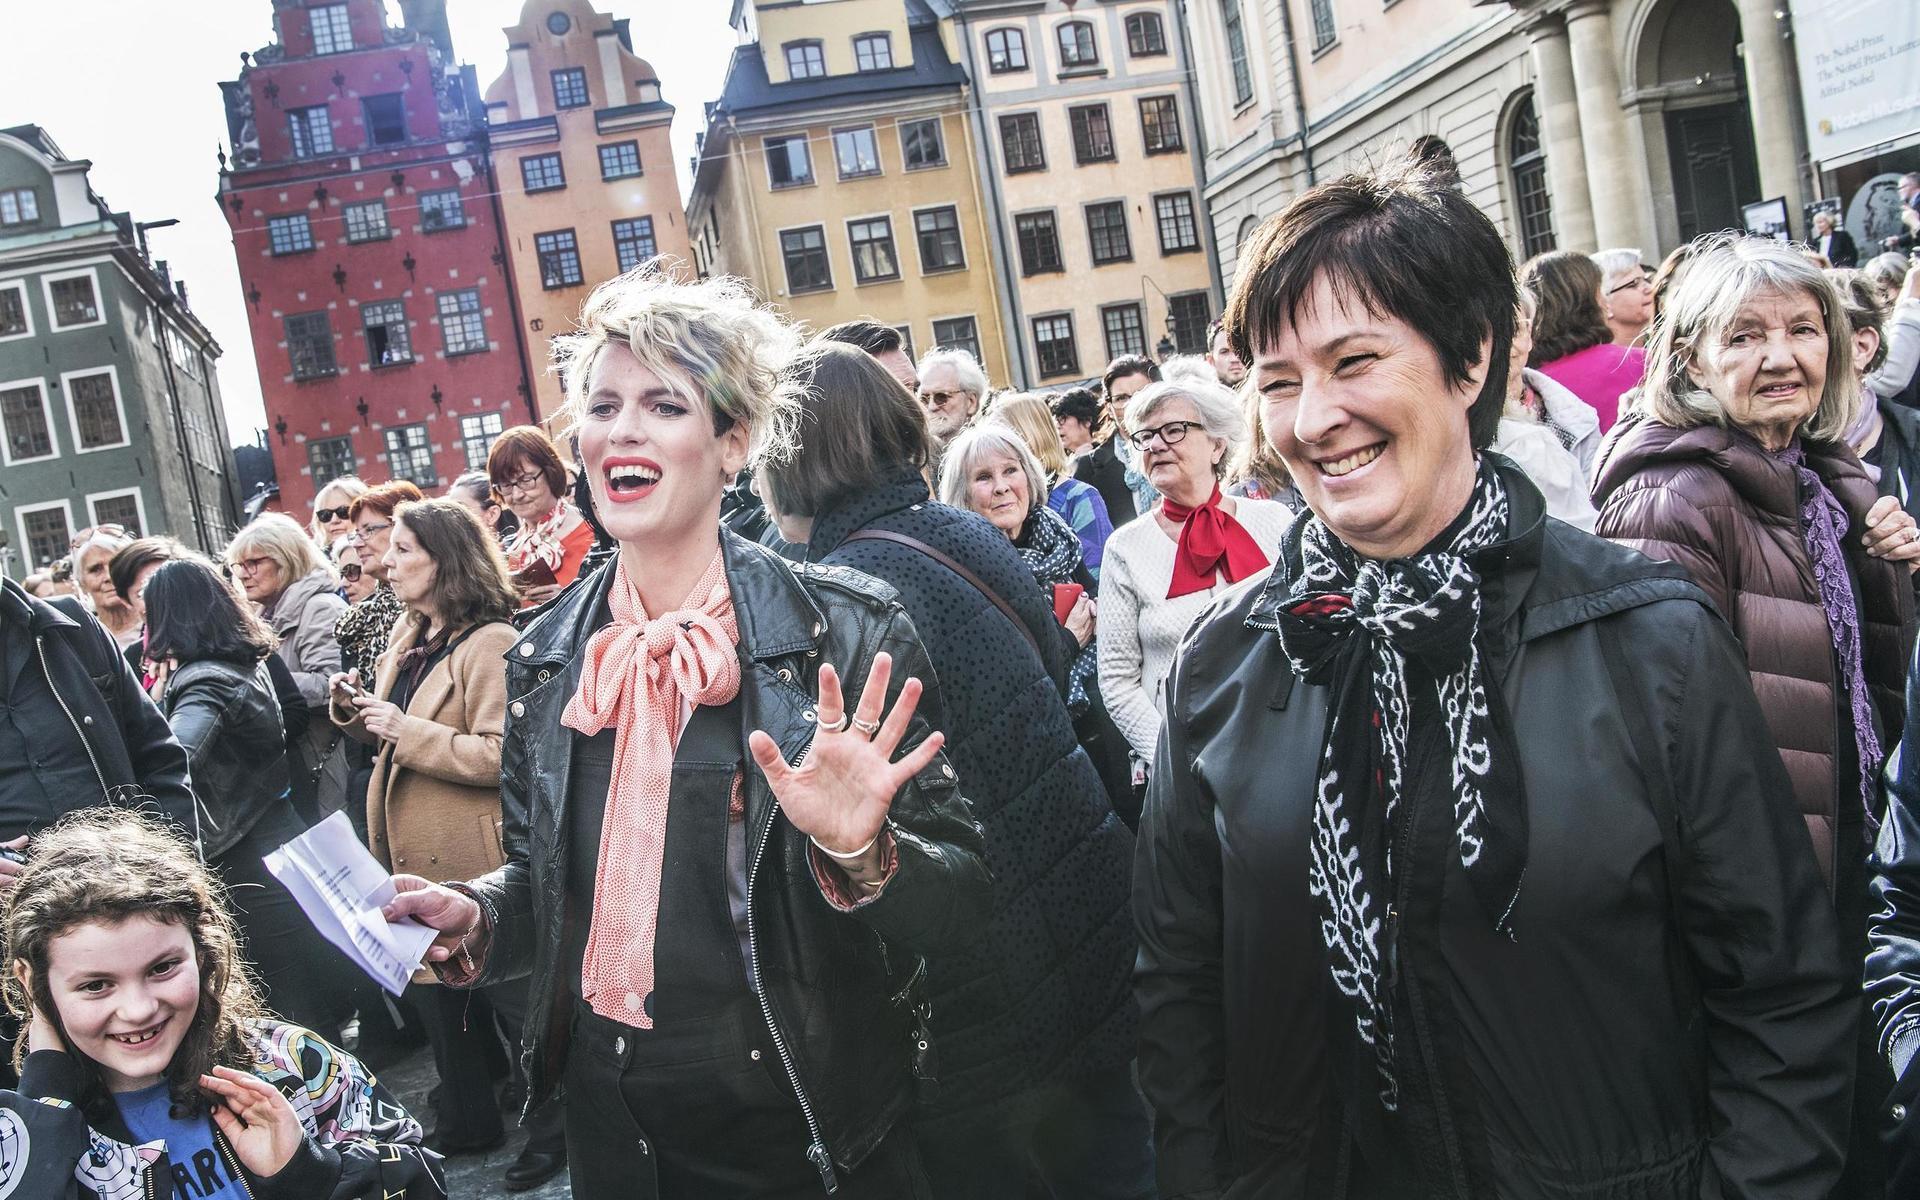 Stortorget i Gamla stan, 19 april 2018. Utanför Svenska Akademien samlades tusentals människor i en knytblusmanifestation till stöd för Sara Danius. Nina Rung och Mona Sahlin (S) fanns bland talarna.